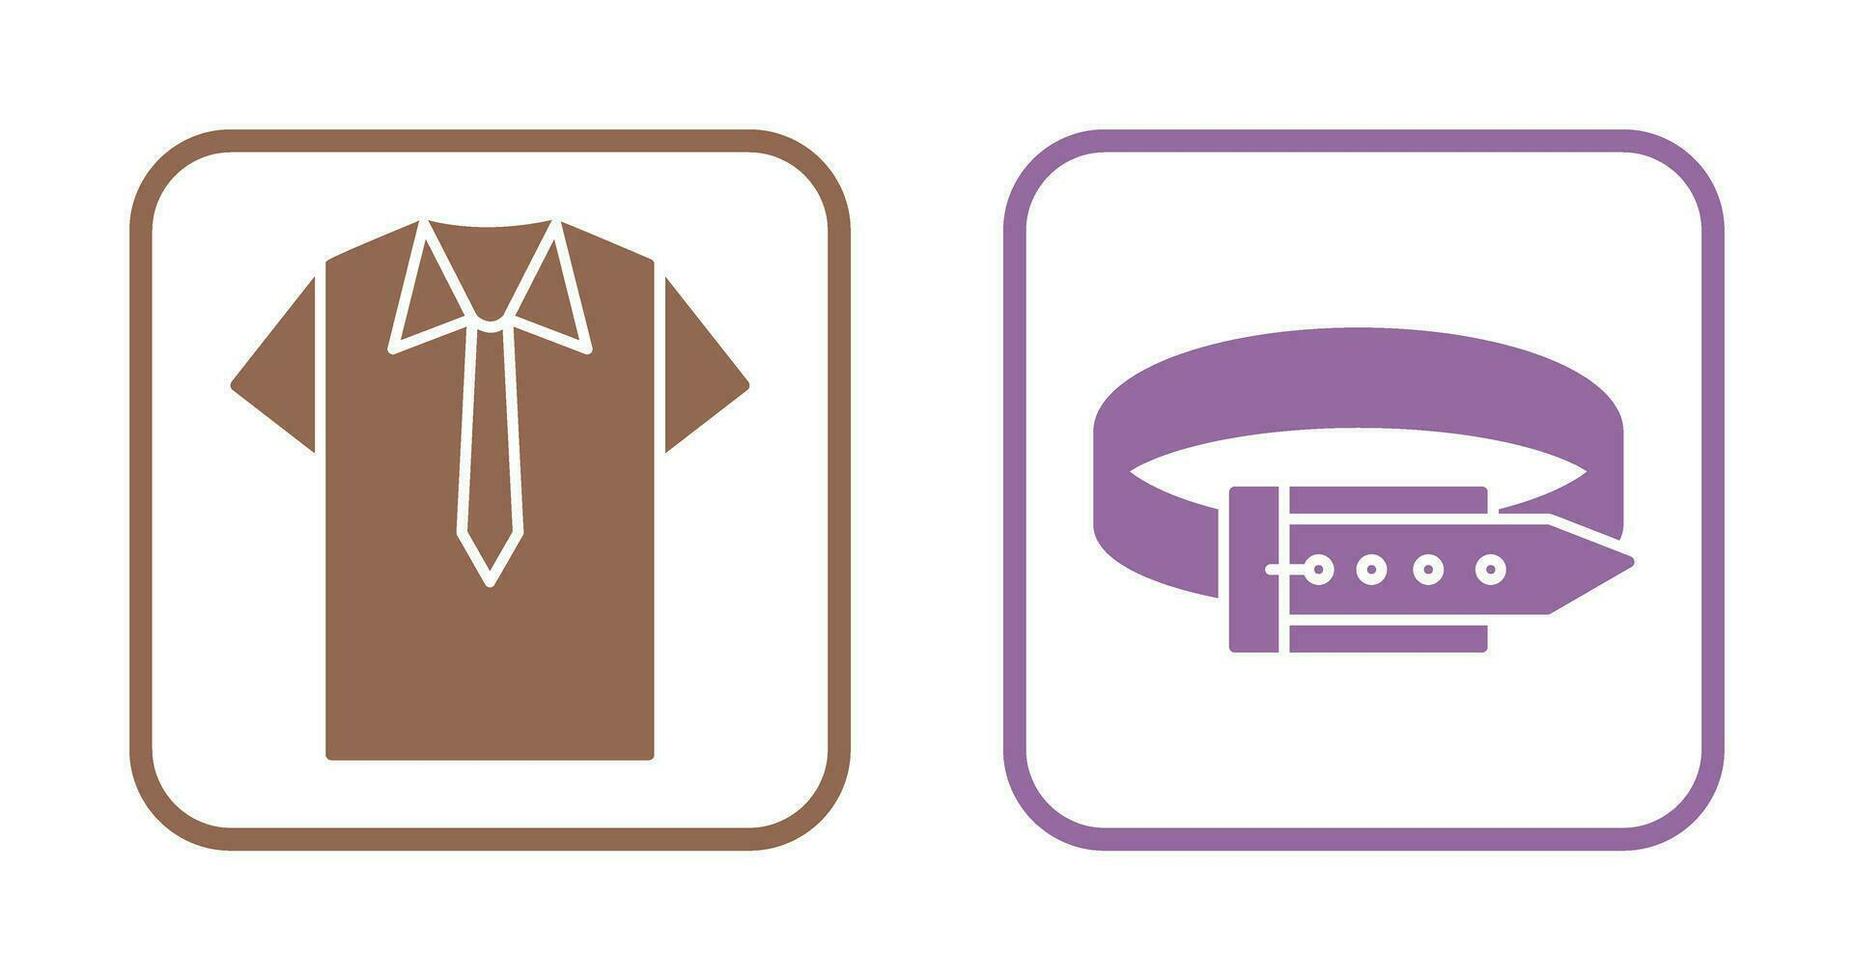 skjorta och slips och bälte ikon vektor